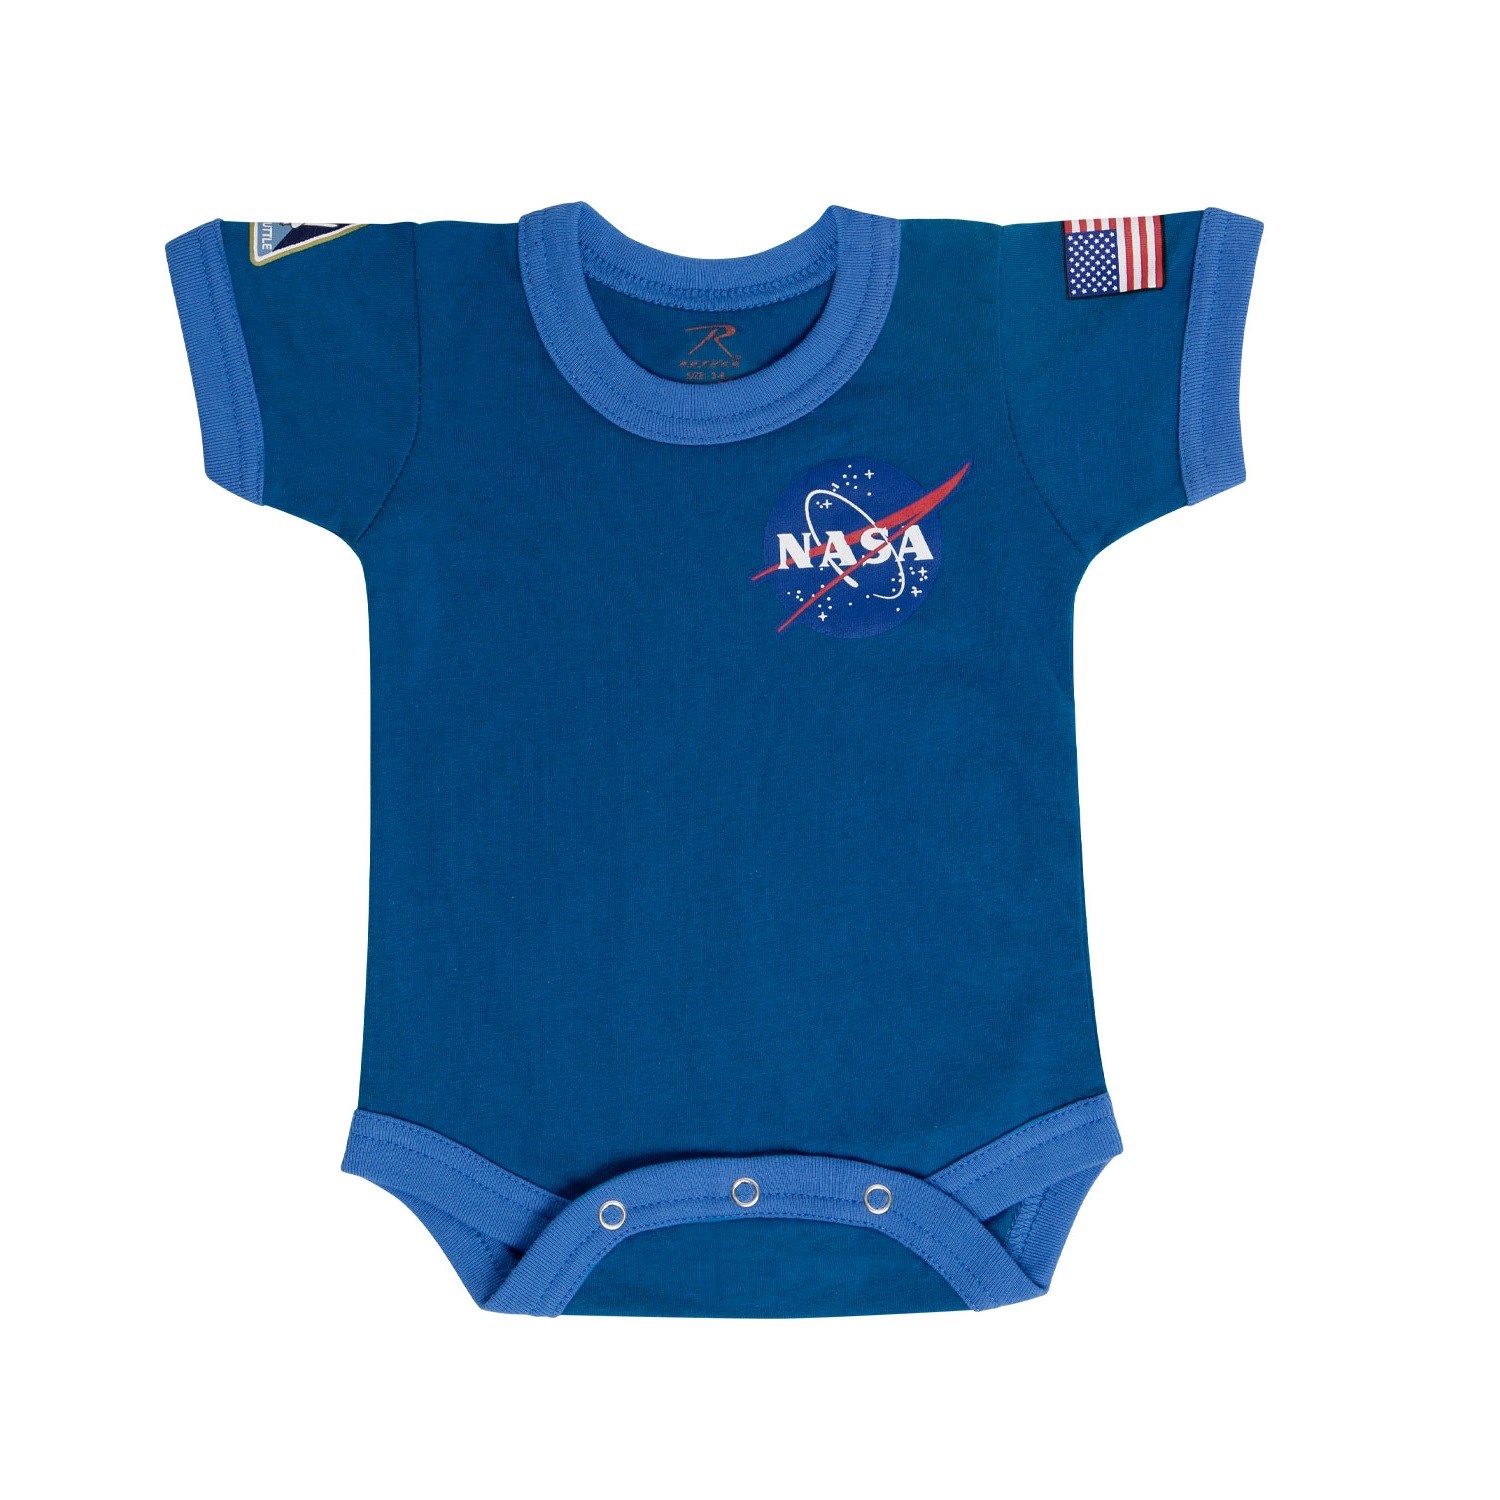 Body dětské NASA MODRÉ vel.12-18